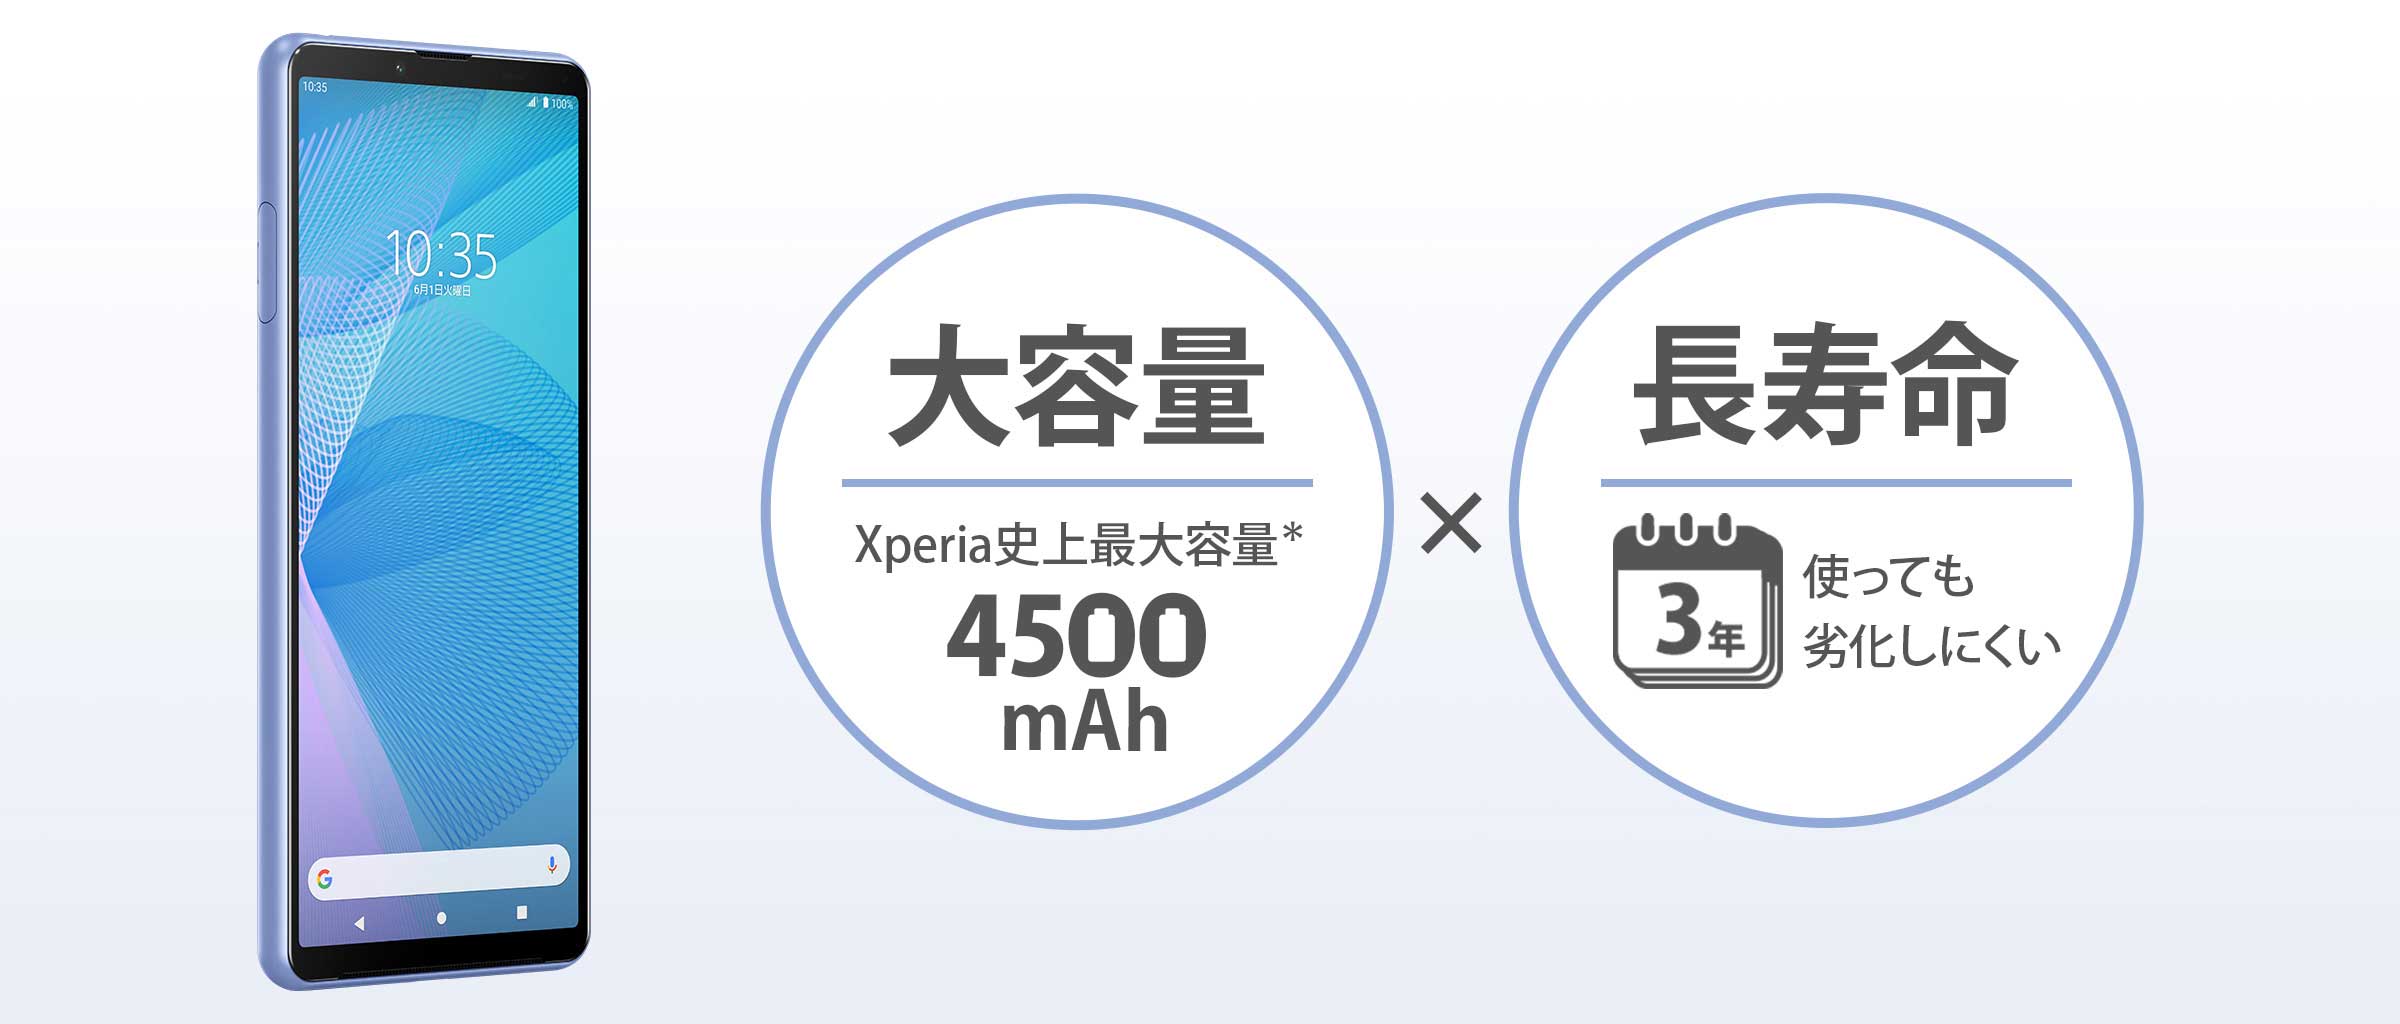 スマートフォン/携帯電話 スマートフォン本体 Xperia 10 III / 10 III Lite | Xperia公式サイト